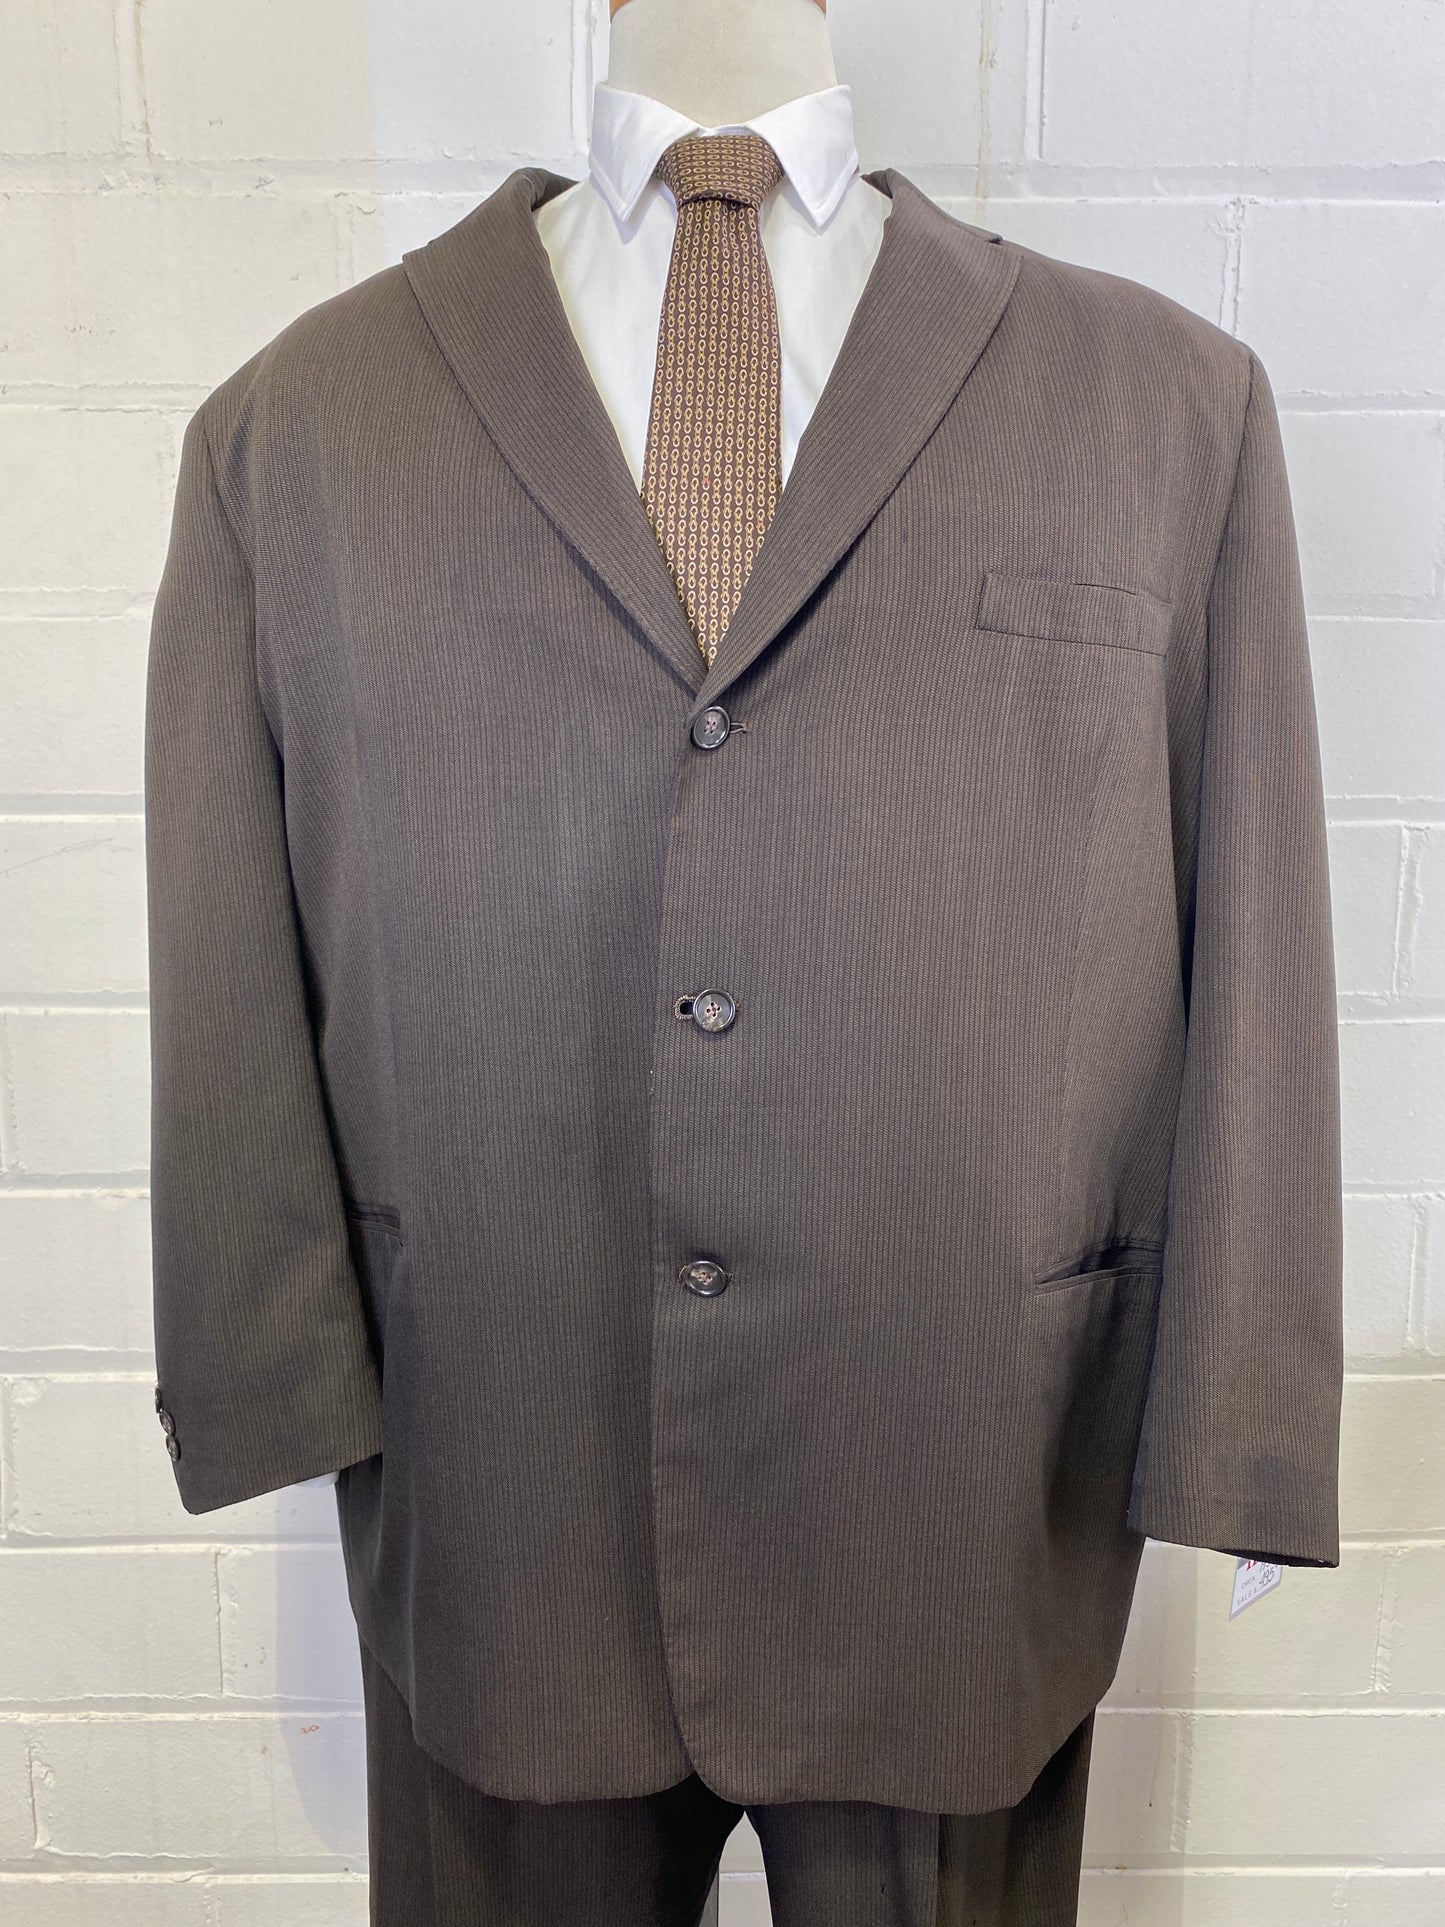 1950s Men's 2-Piece Brown Pinstripe Suit, Spencer, C52T